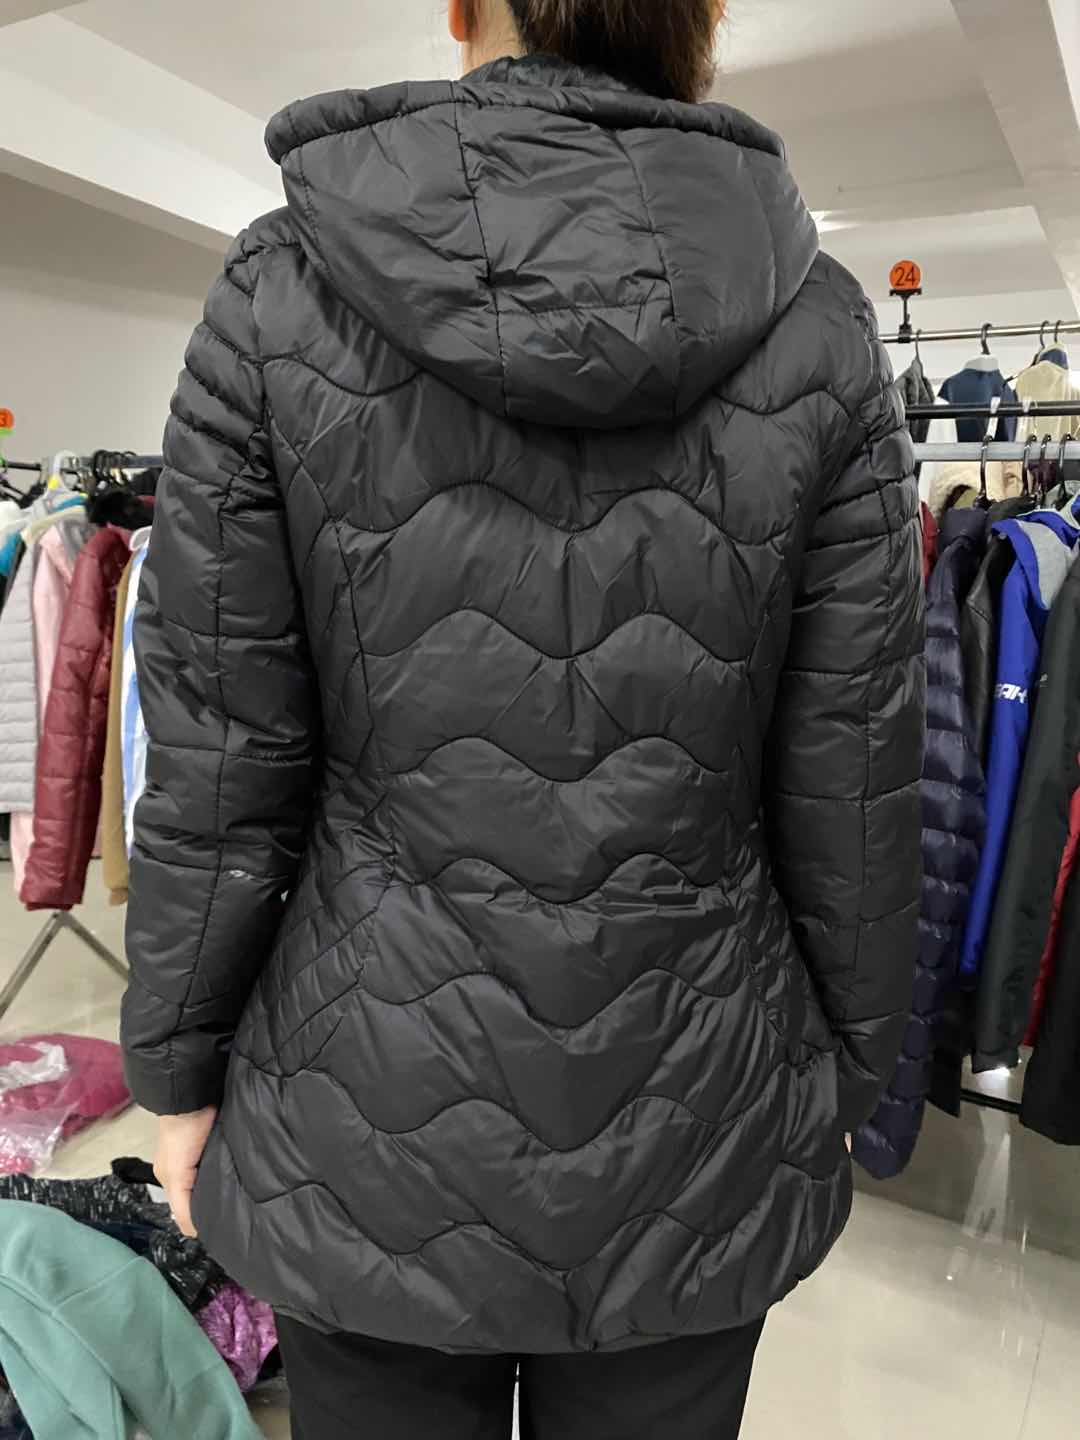 Ladies Longline coats in Stock